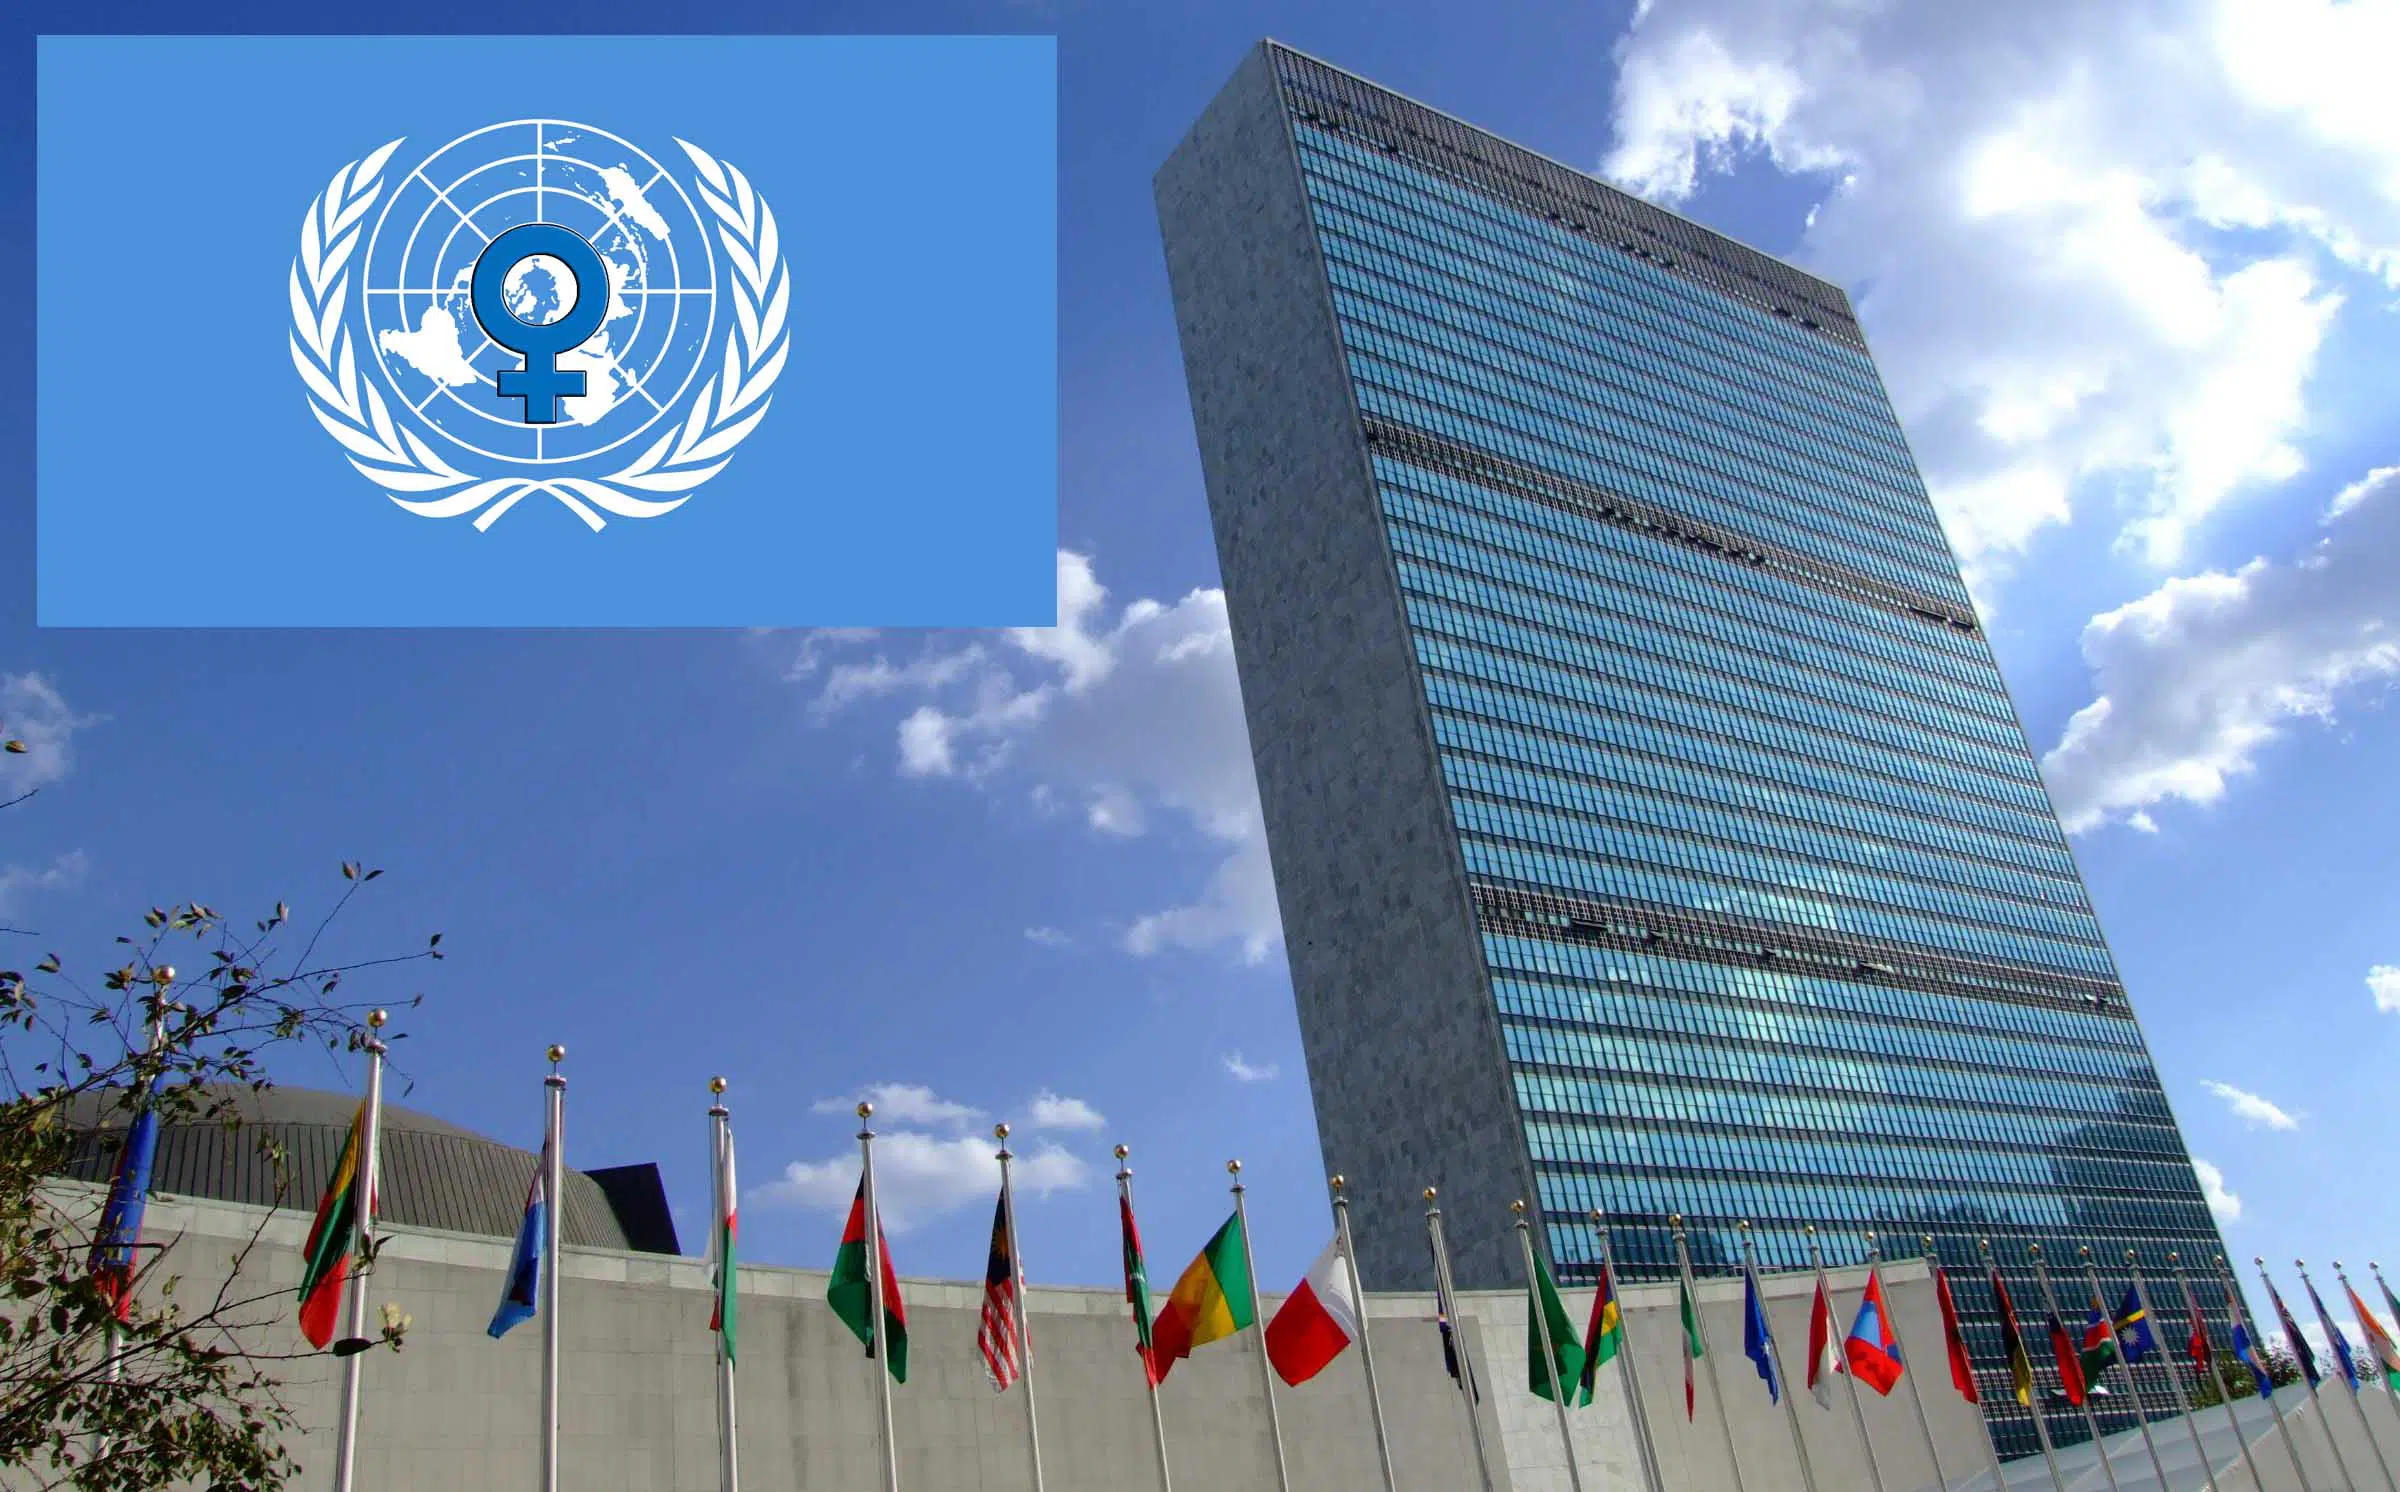 ¿El próximo secretario general de la ONU podría ser una mujer? La AMJE apuesta por ello